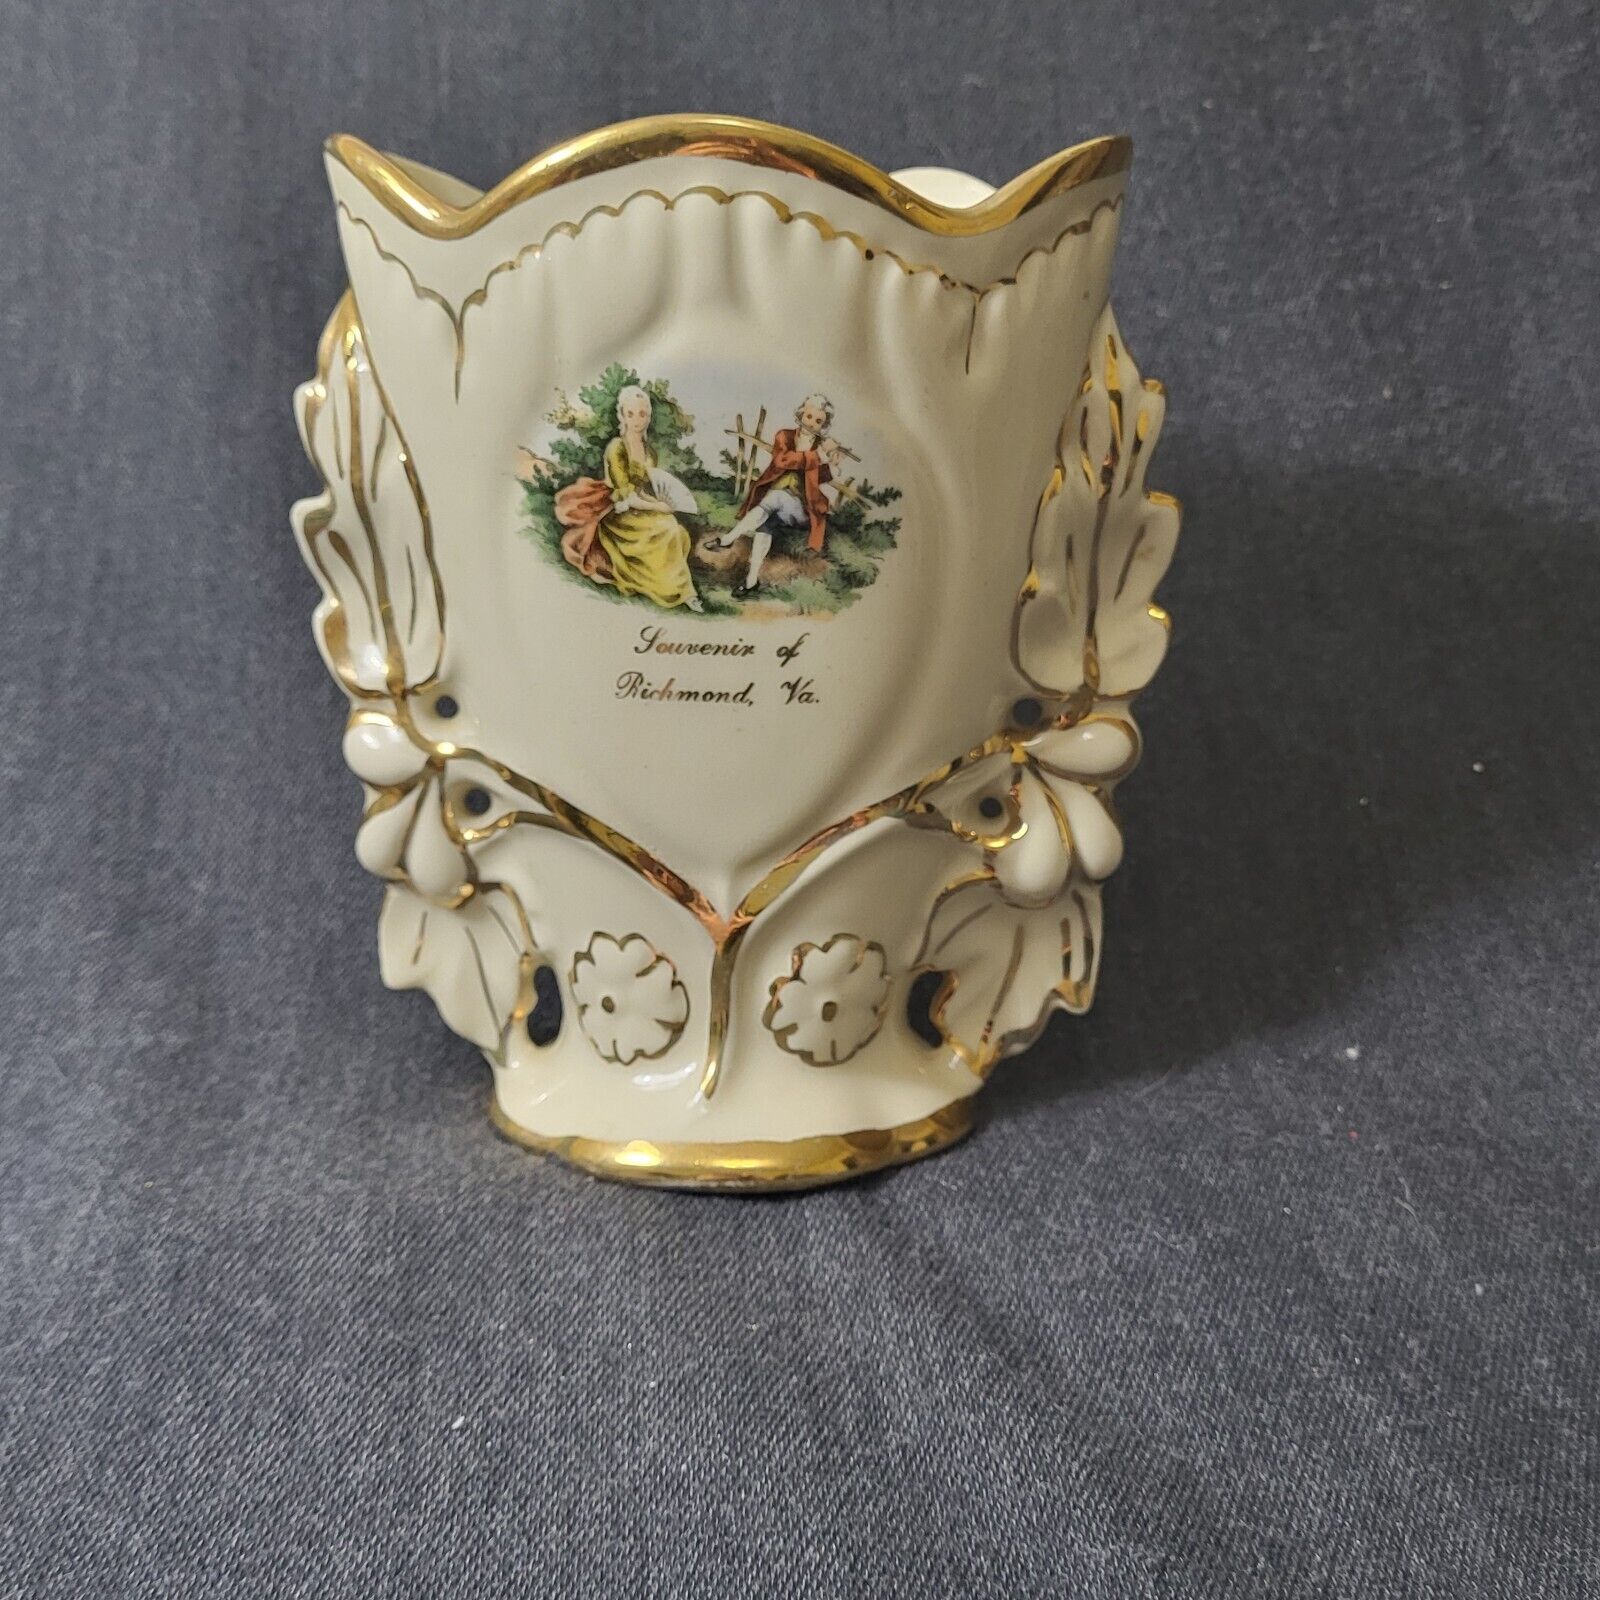 Vintage Capsco Souvenir Ceramic Vase - Richmond Va. -Gold Trim